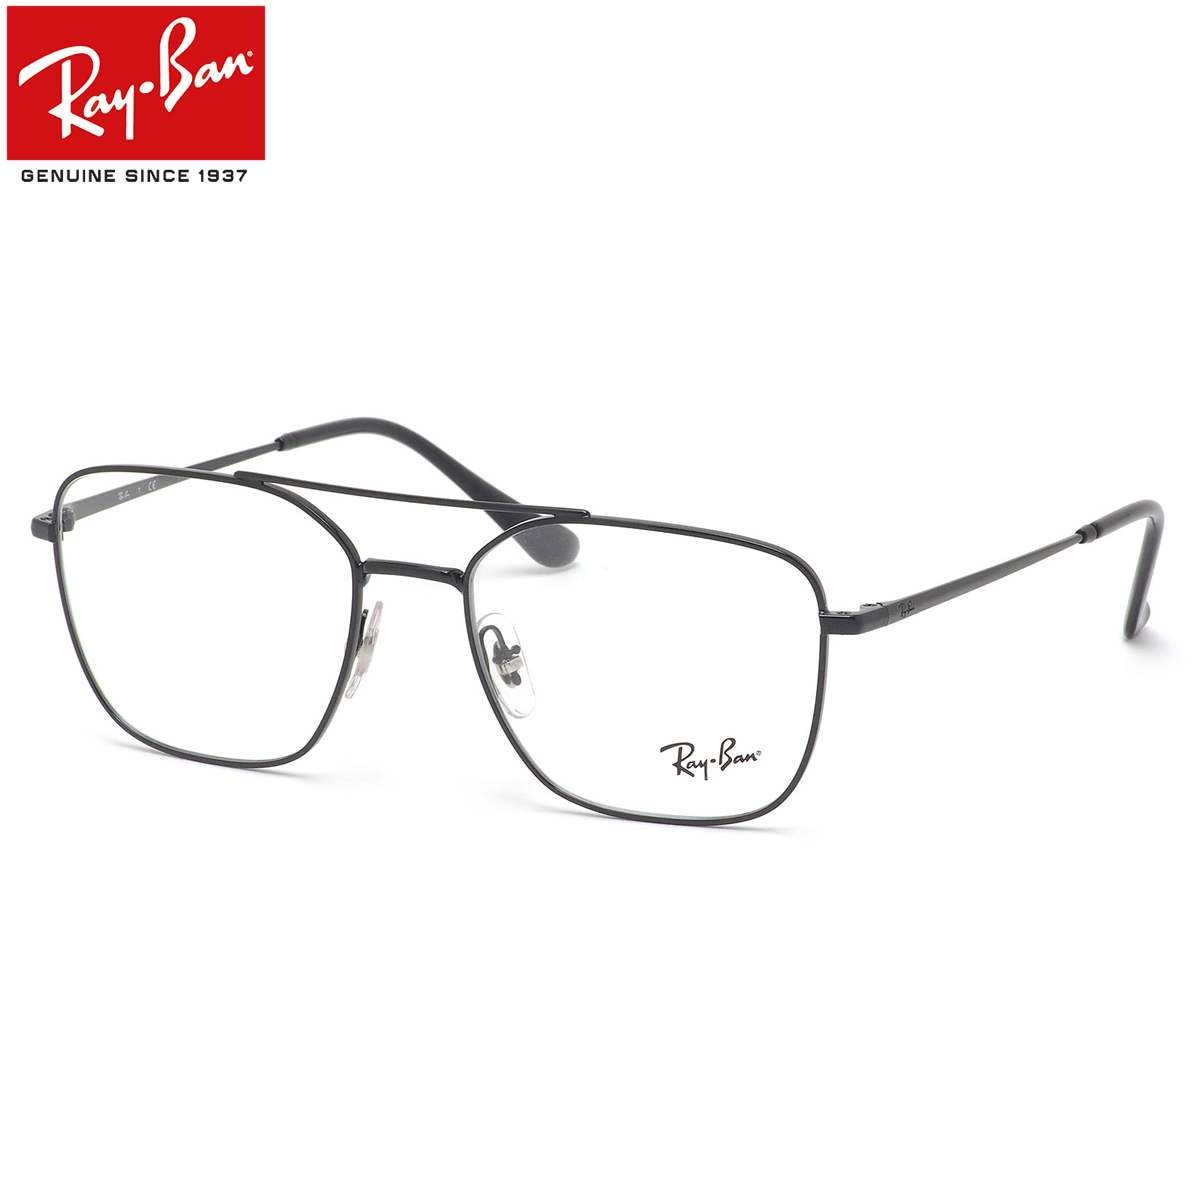 レイバン Ray-Ban レディース メンズ 度数付き対応 RayBan ダブルブリッジ ツーブリッジ スクエア レイバン純正レンズ対応 2509 RX6450 メガネ 眼鏡